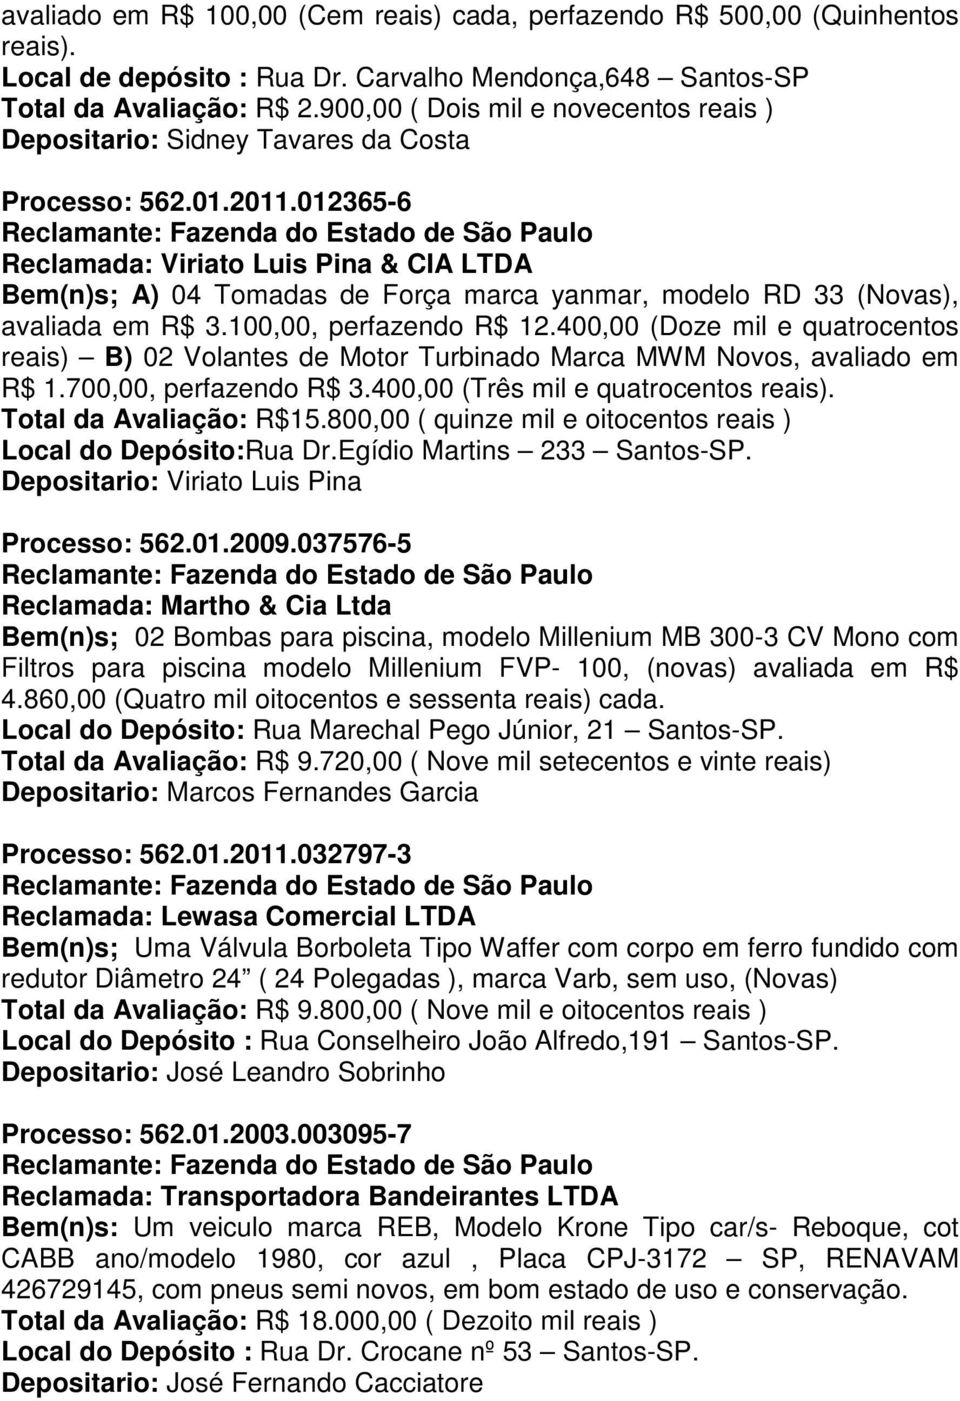 012365-6 Reclamada: Viriato Luis Pina & CIA LTDA Bem(n)s; A) 04 Tomadas de Força marca yanmar, modelo RD 33 (Novas), avaliada em R$ 3.100,00, perfazendo R$ 12.